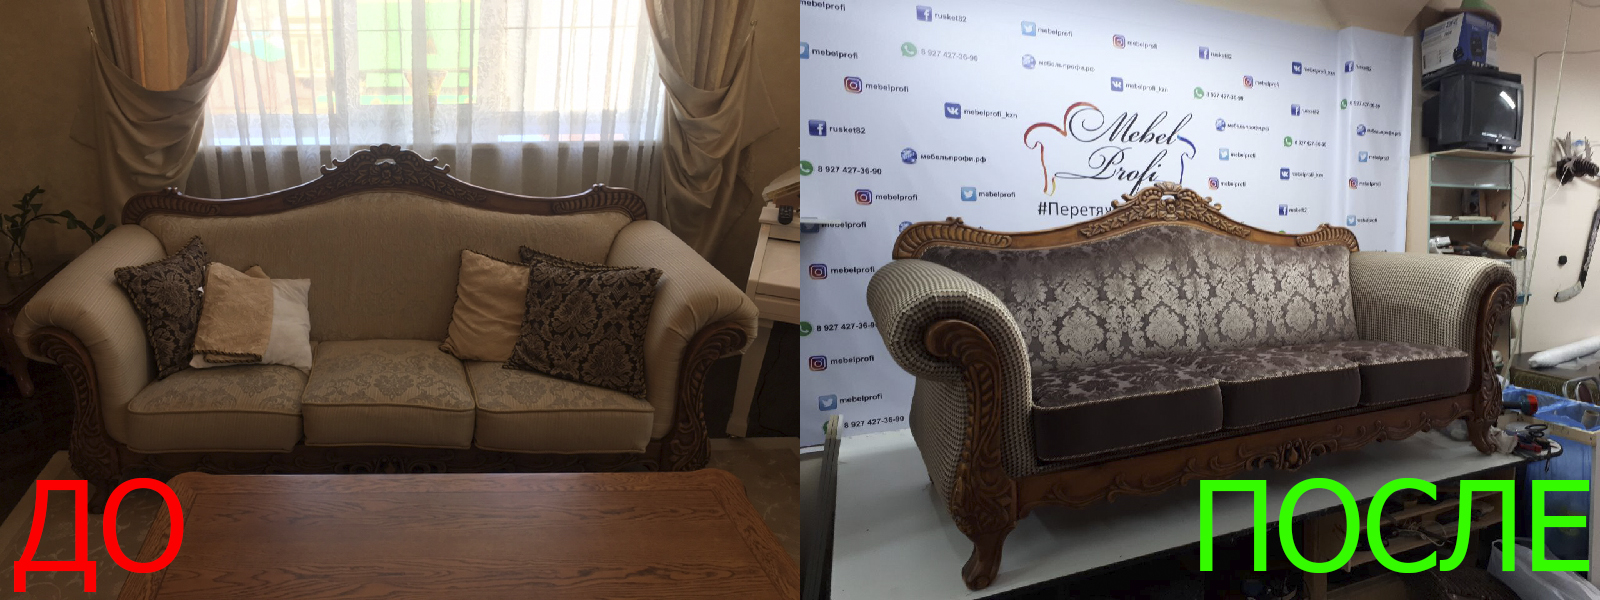 Ремонт кожаного дивана в Краснодаре от опытных специалистов мастерской MebelProfi